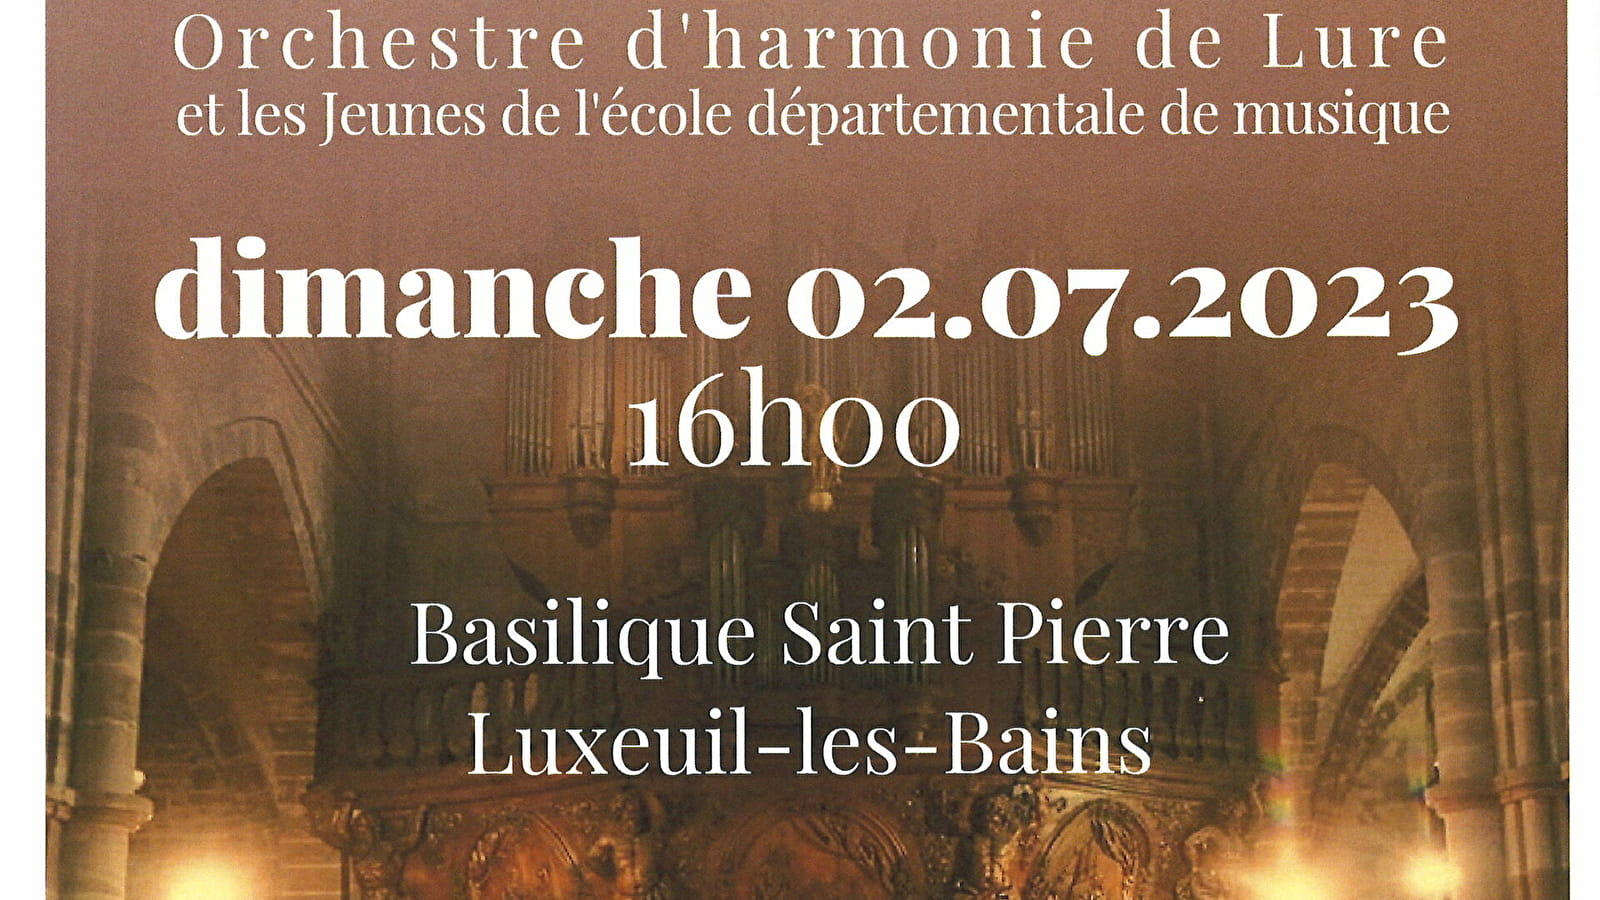 Orchestre d’harmonie de Lure Luxeuil